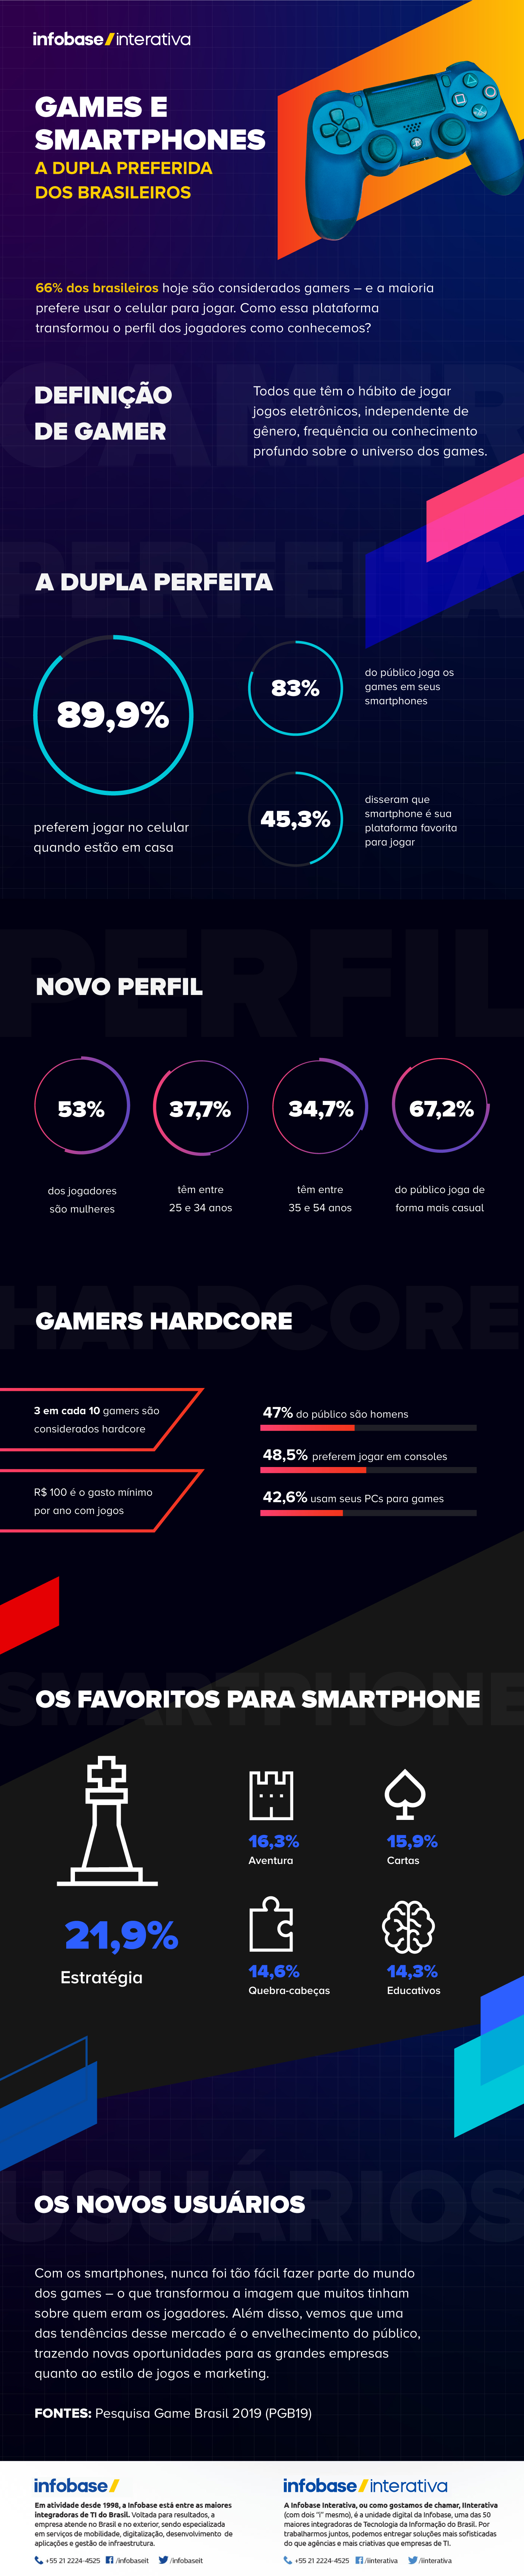 Celular se isola como principal plataforma dos gamers no Brasil - Diário do  Comércio